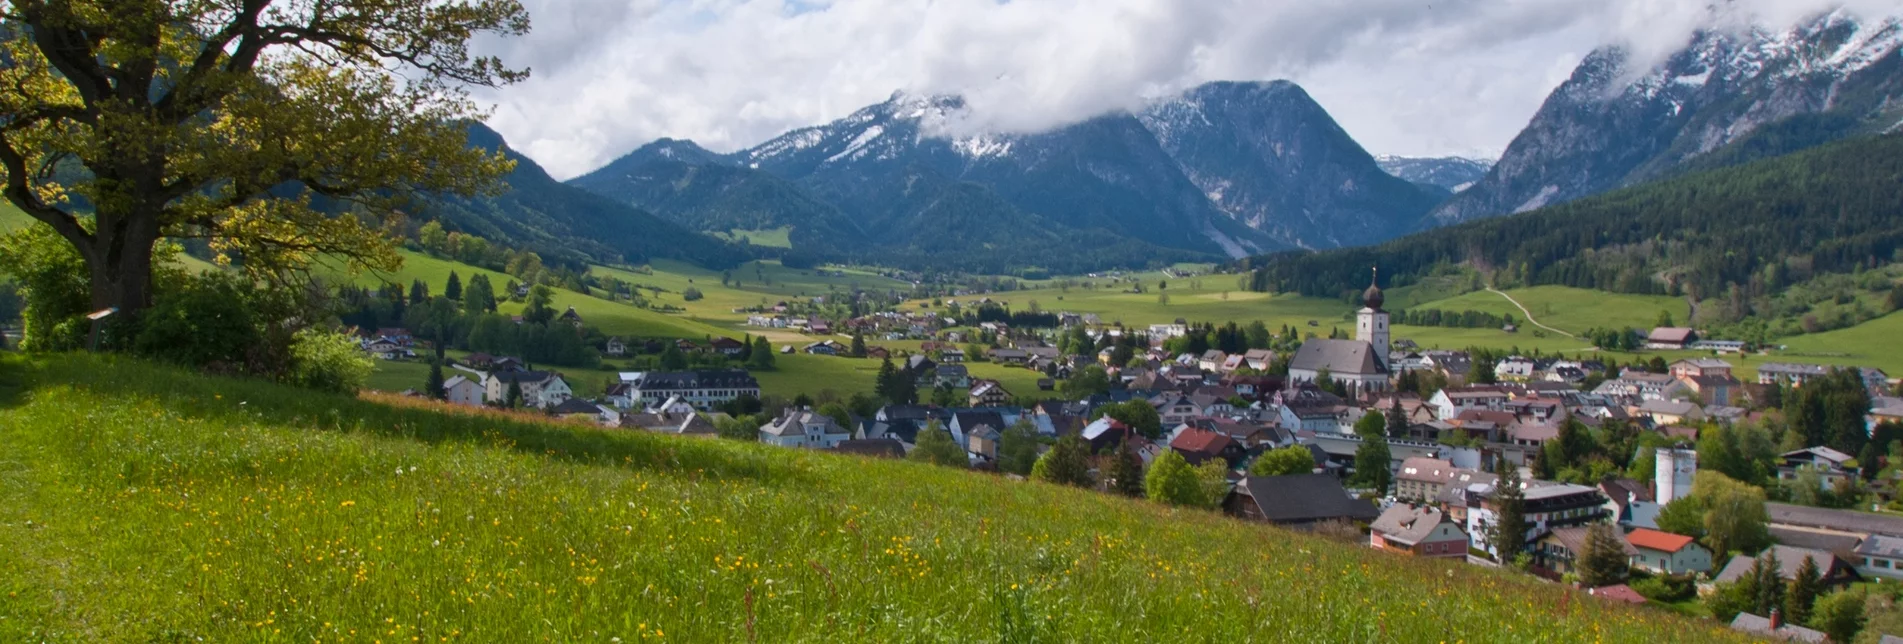 Fernwanderweg Panoramaweg 100 - Etappen nördlich der Enns - Touren-Impression #1 | © Erlebnisregion Schladming-Dachstein